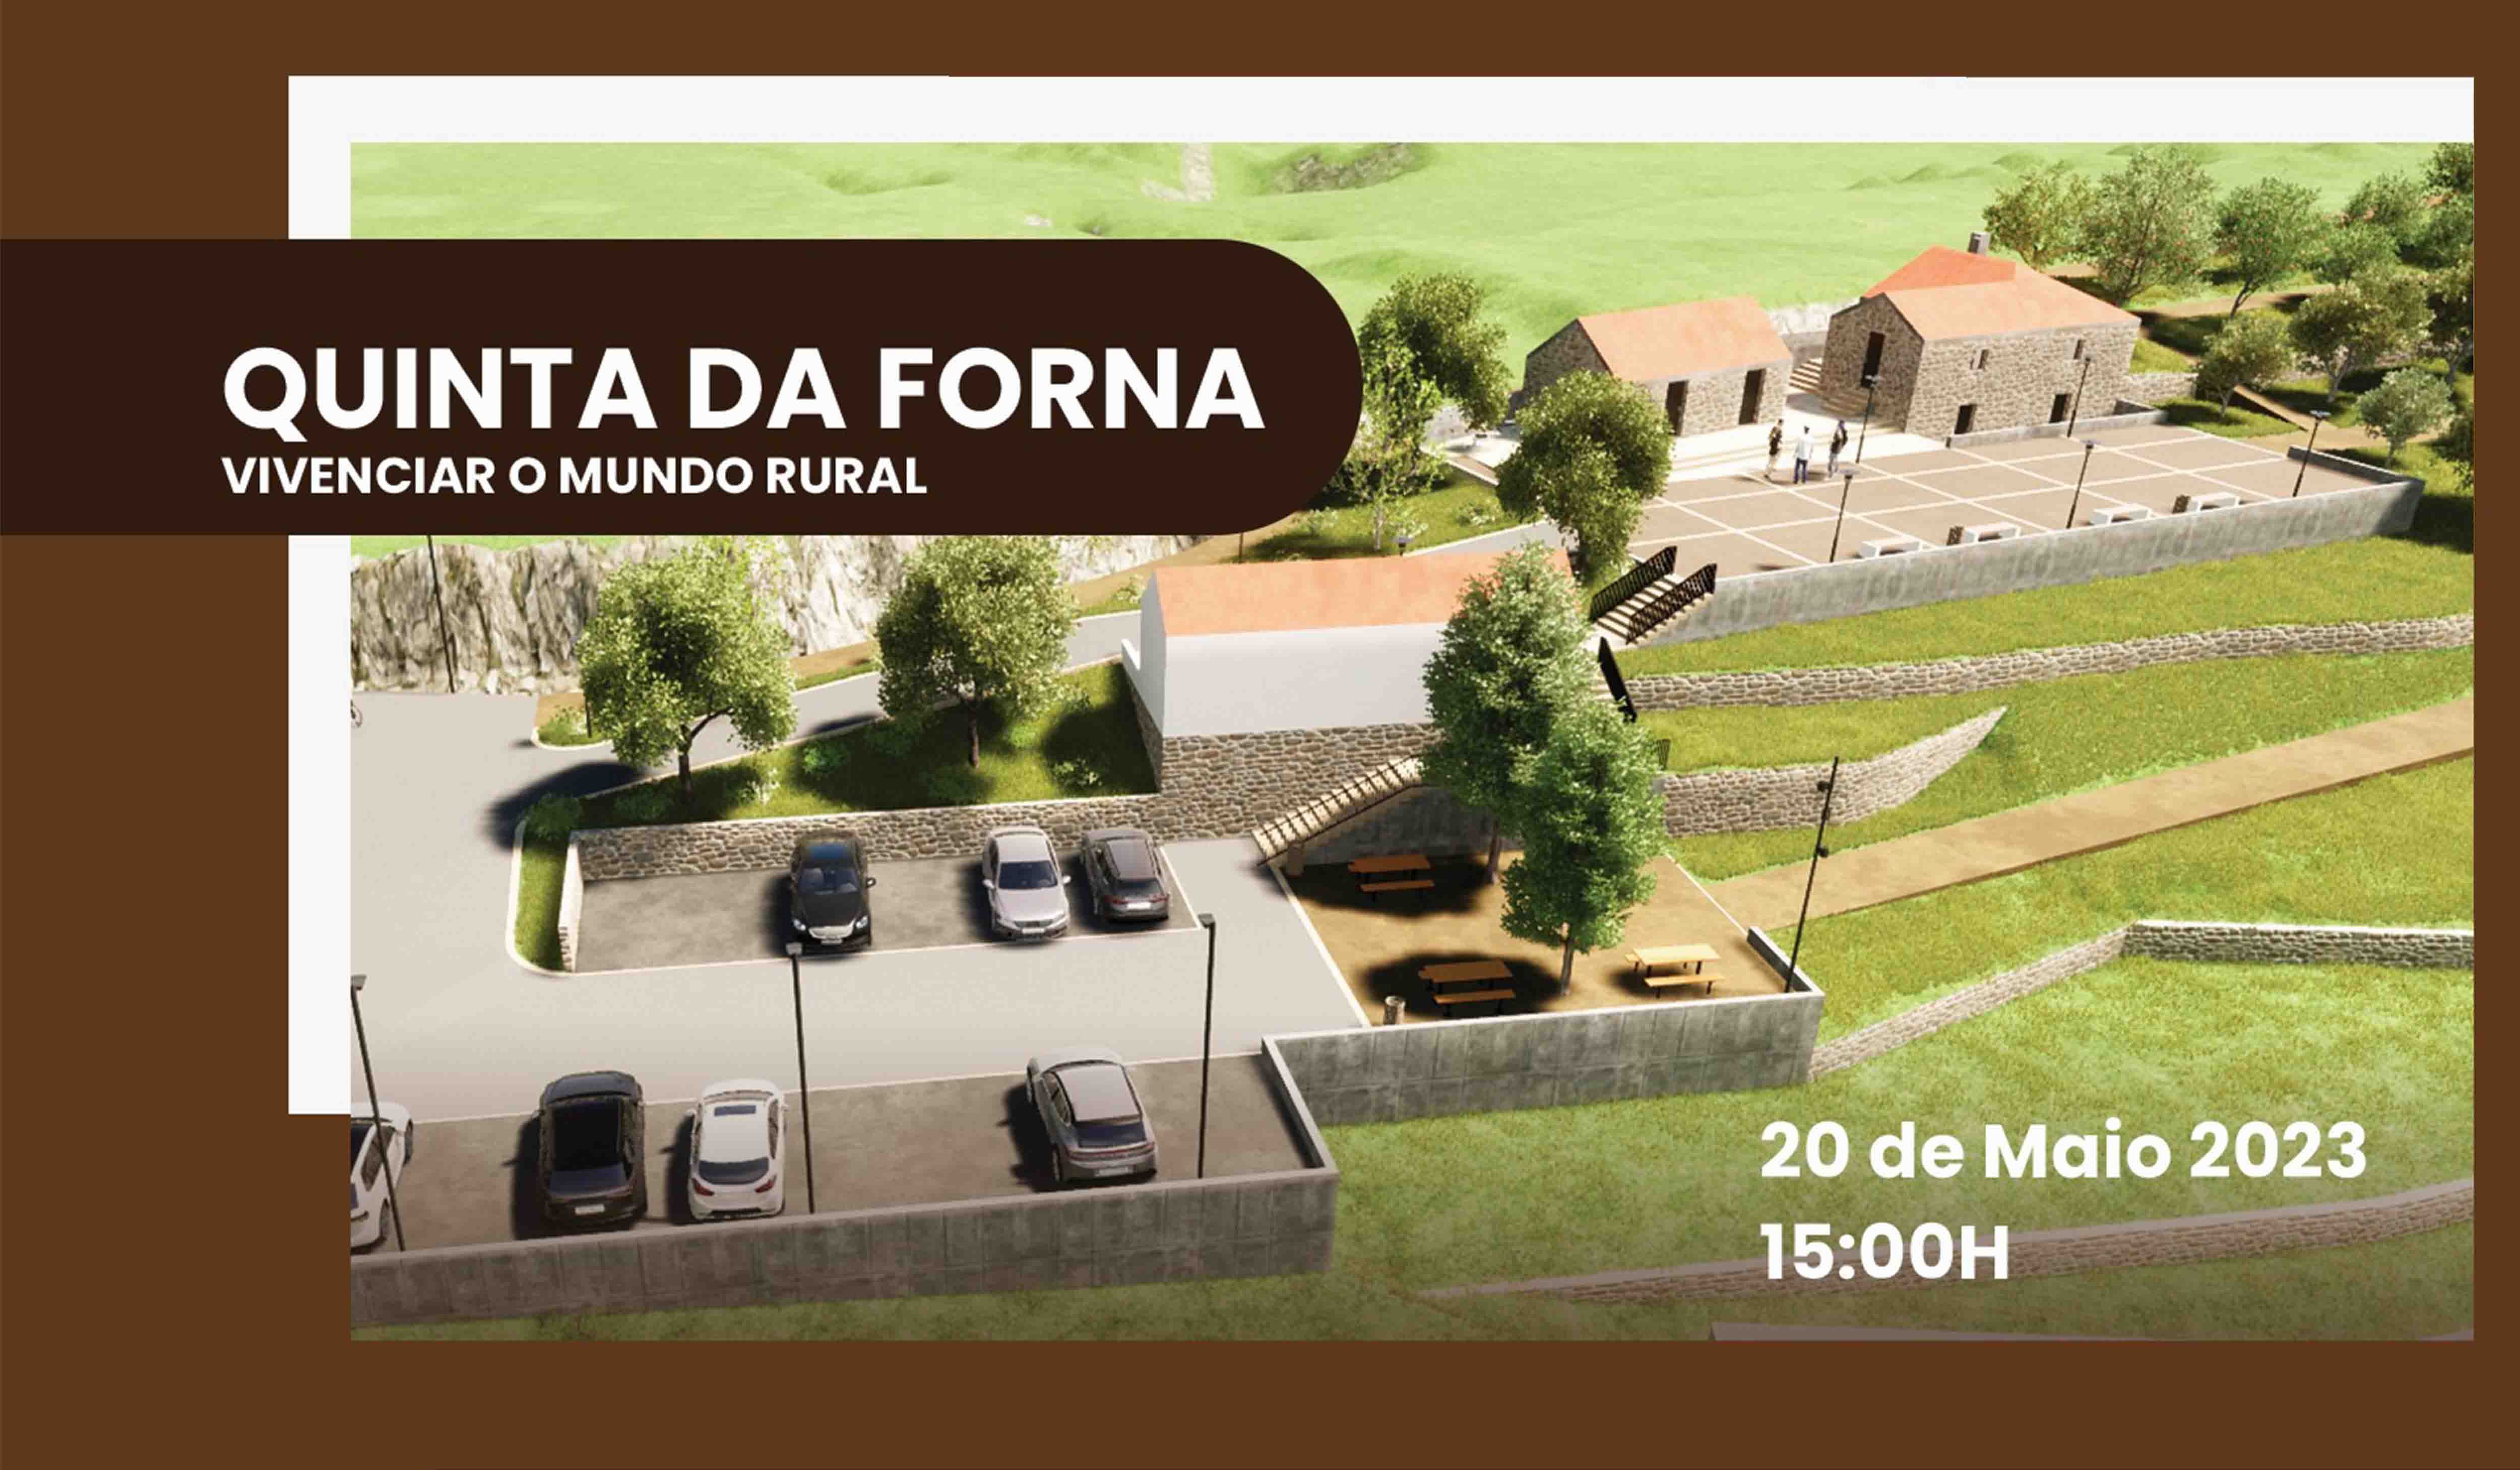 Quinta da Forna - Vivenciar o Mundo Rural